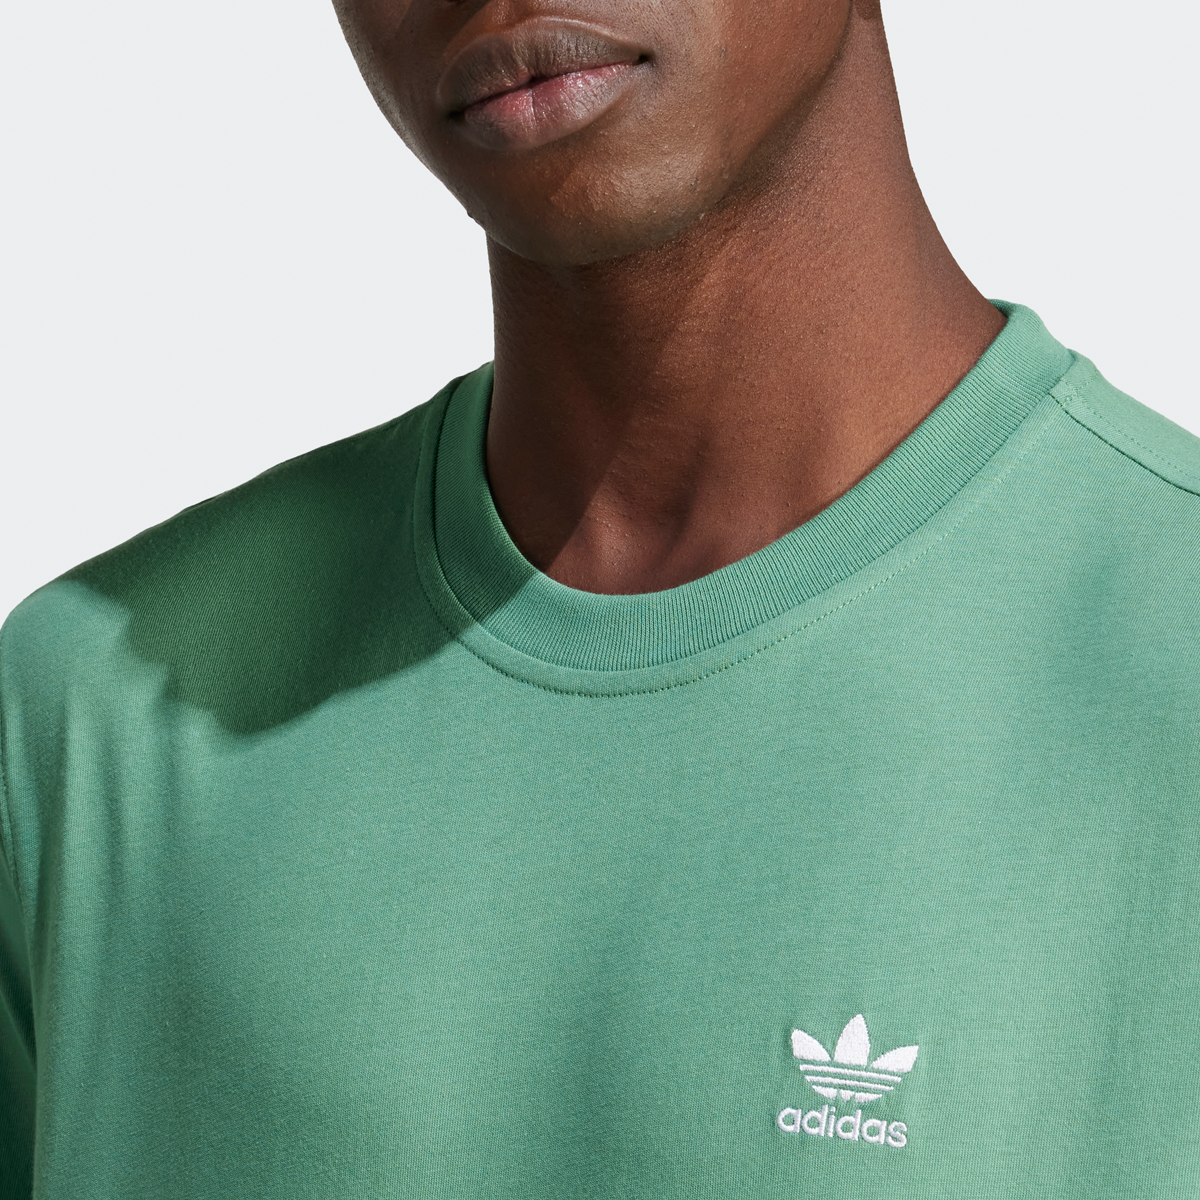 adidas Originals Essentials T-shirt T-shirts Heren preloved green maat: M beschikbare maaten:S M L XL